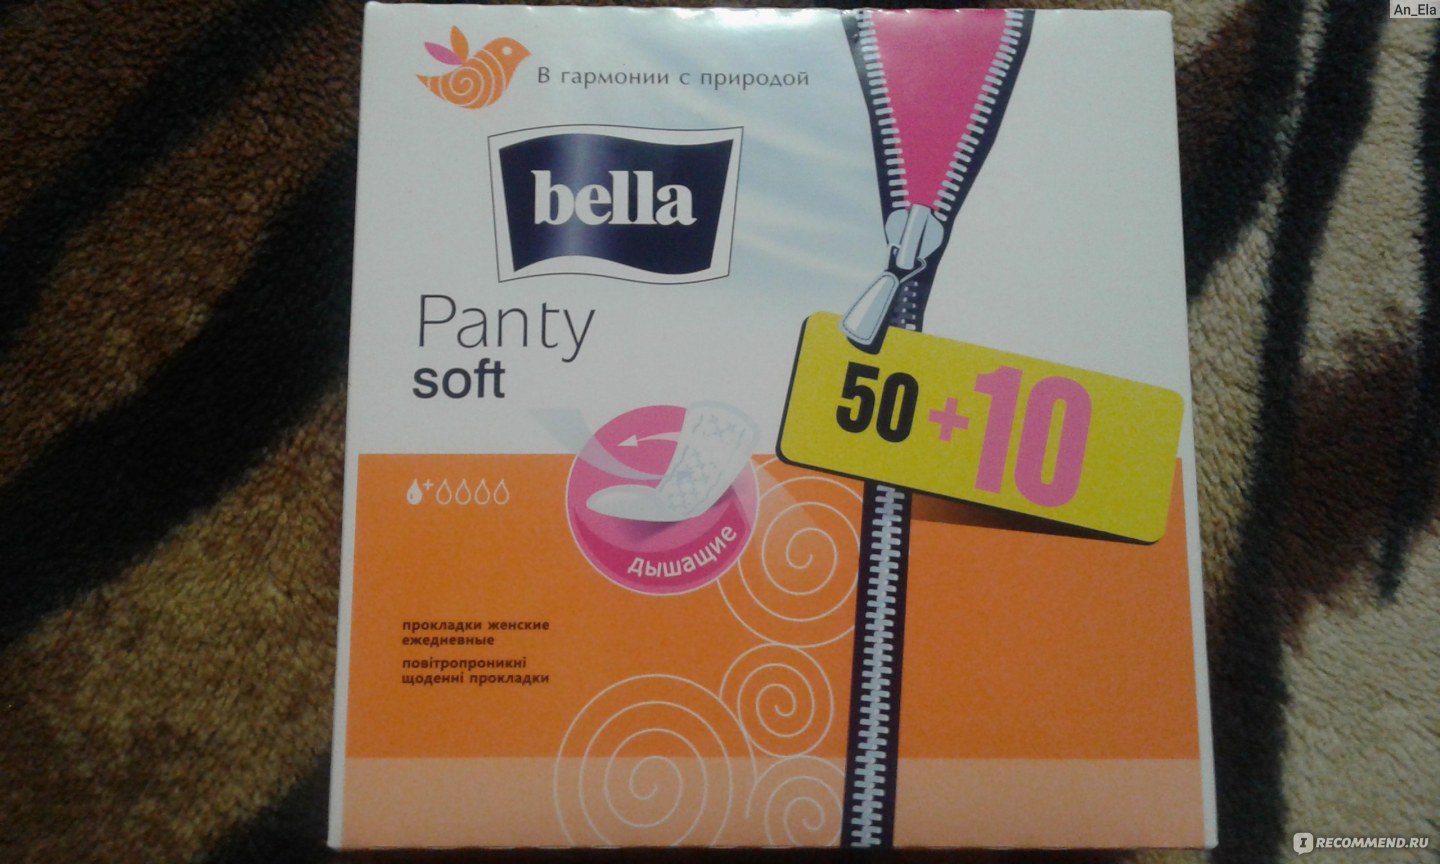 Bella forum. Bella panty Soft прокладки ежедневные 40шт. В окей ежедневные прокладки. Ежедневные прокладки Ашан. Прокладки ежедневные Bella panty Soft отзывы.